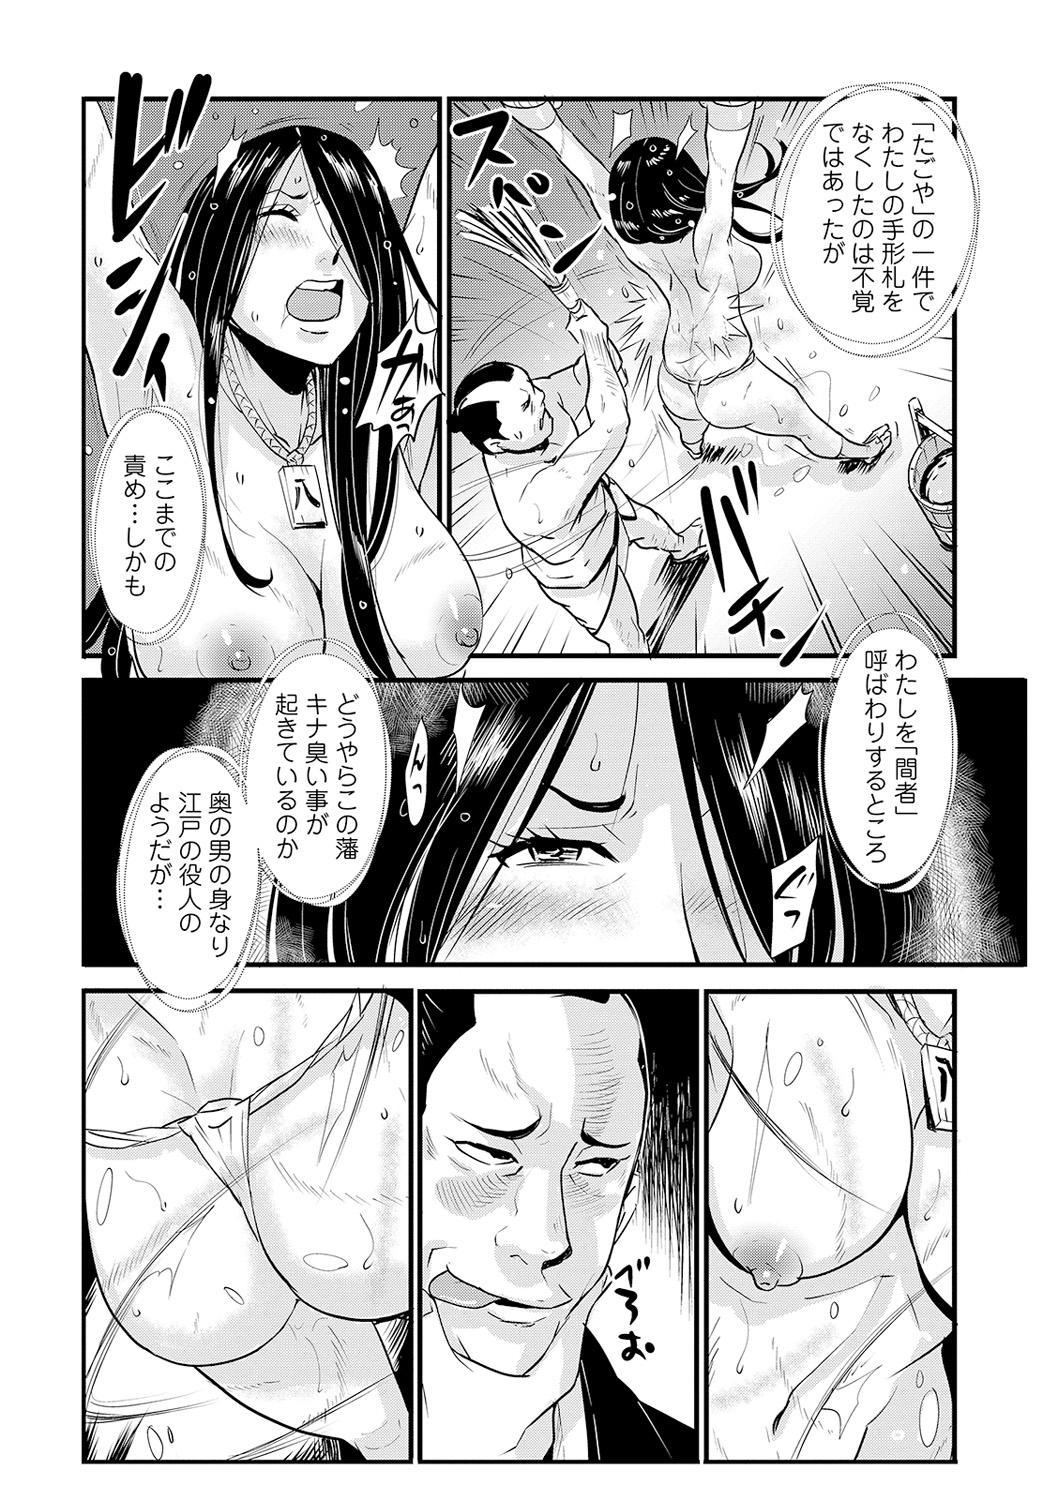 Tits Harami samurai 09 Gayclips - Page 8